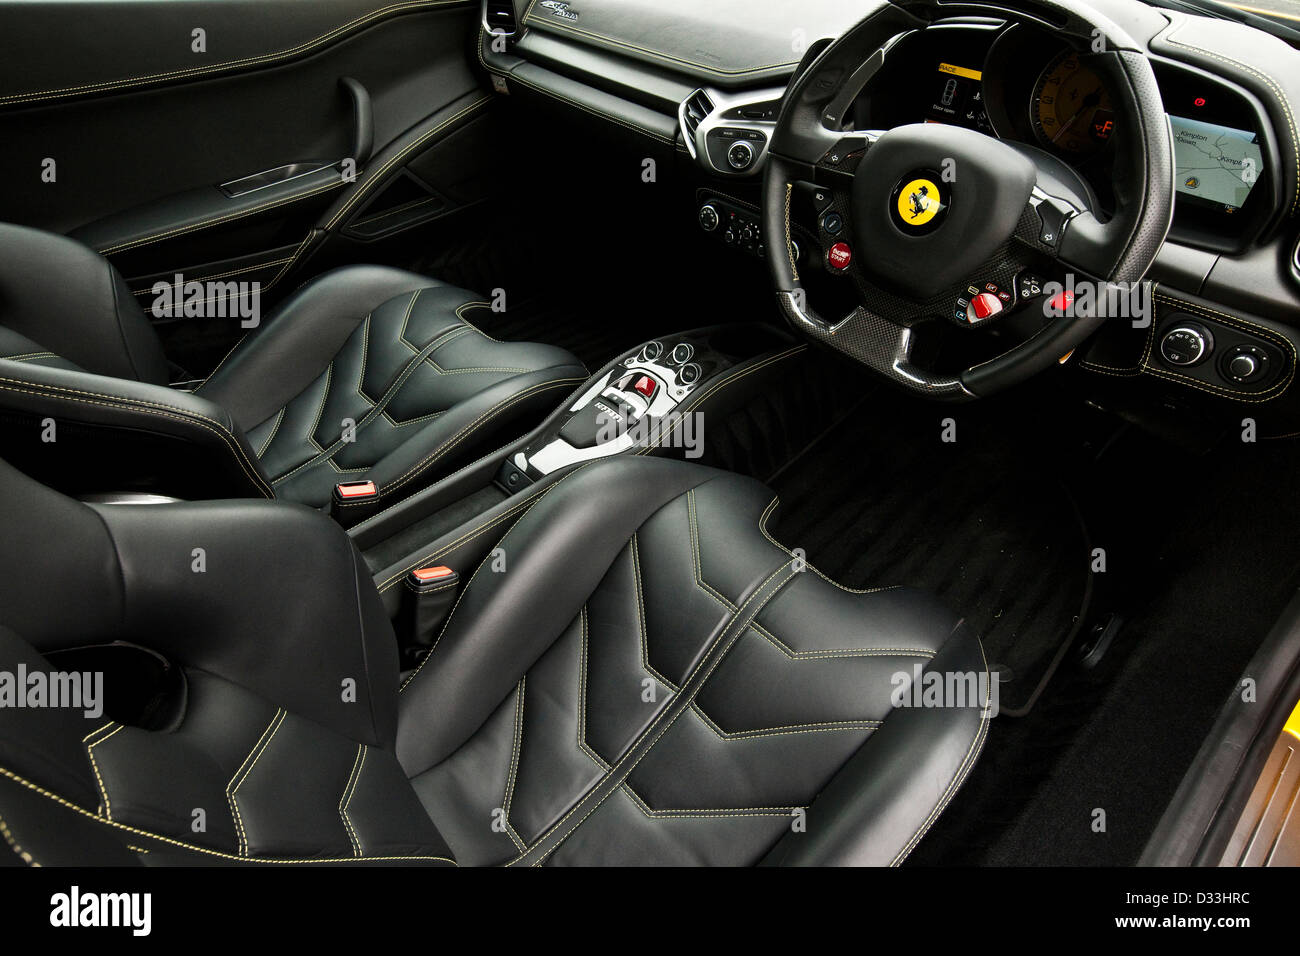 Rivestimento in pelle a Ferrari 458 Italia auto sportiva, Thruxton, REGNO UNITO, 03 08 2010 Foto Stock